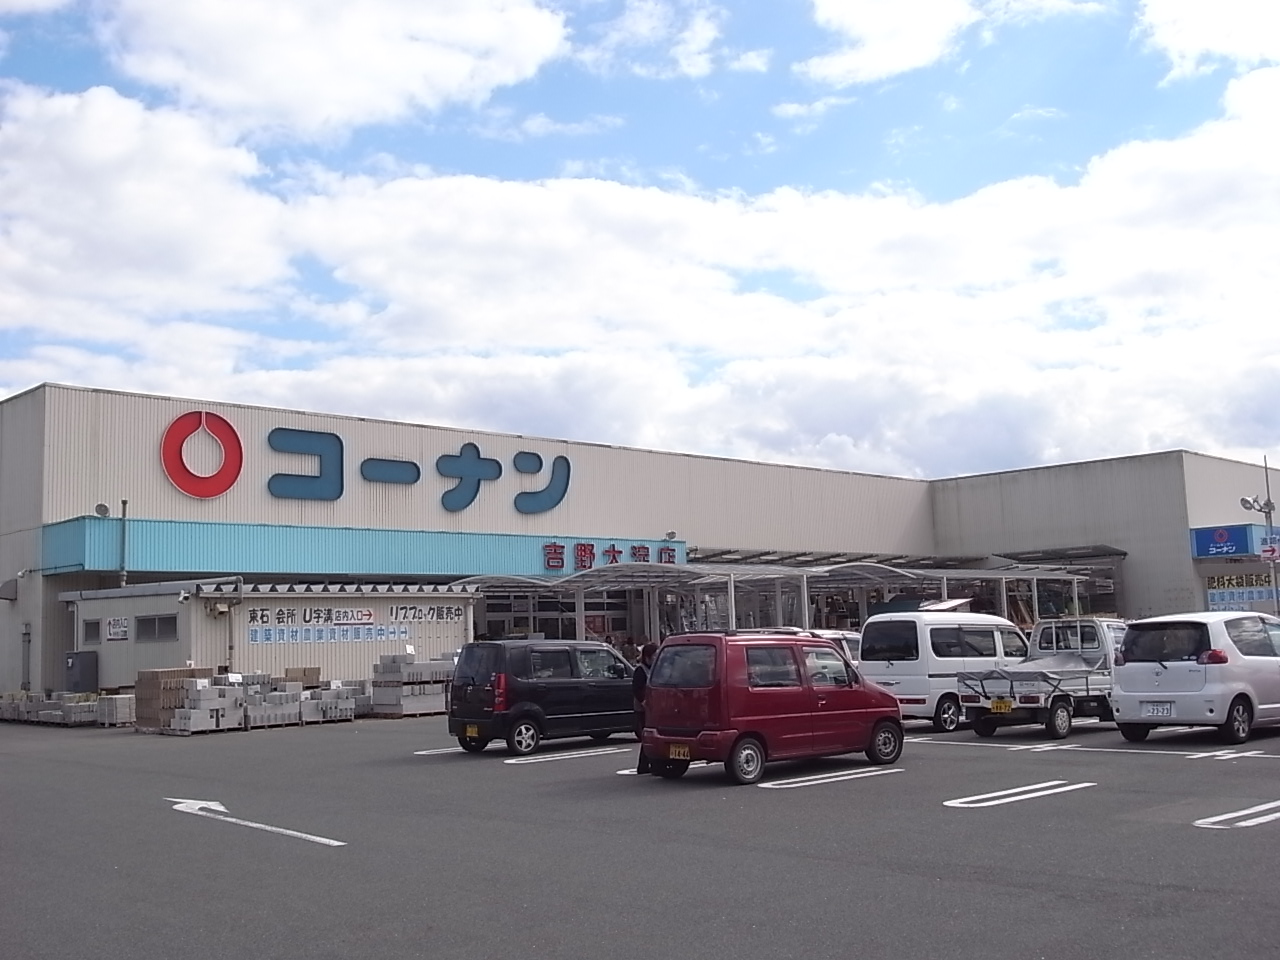 Home center. 778m to home improvement Konan Yoshino Oyodo store (hardware store)